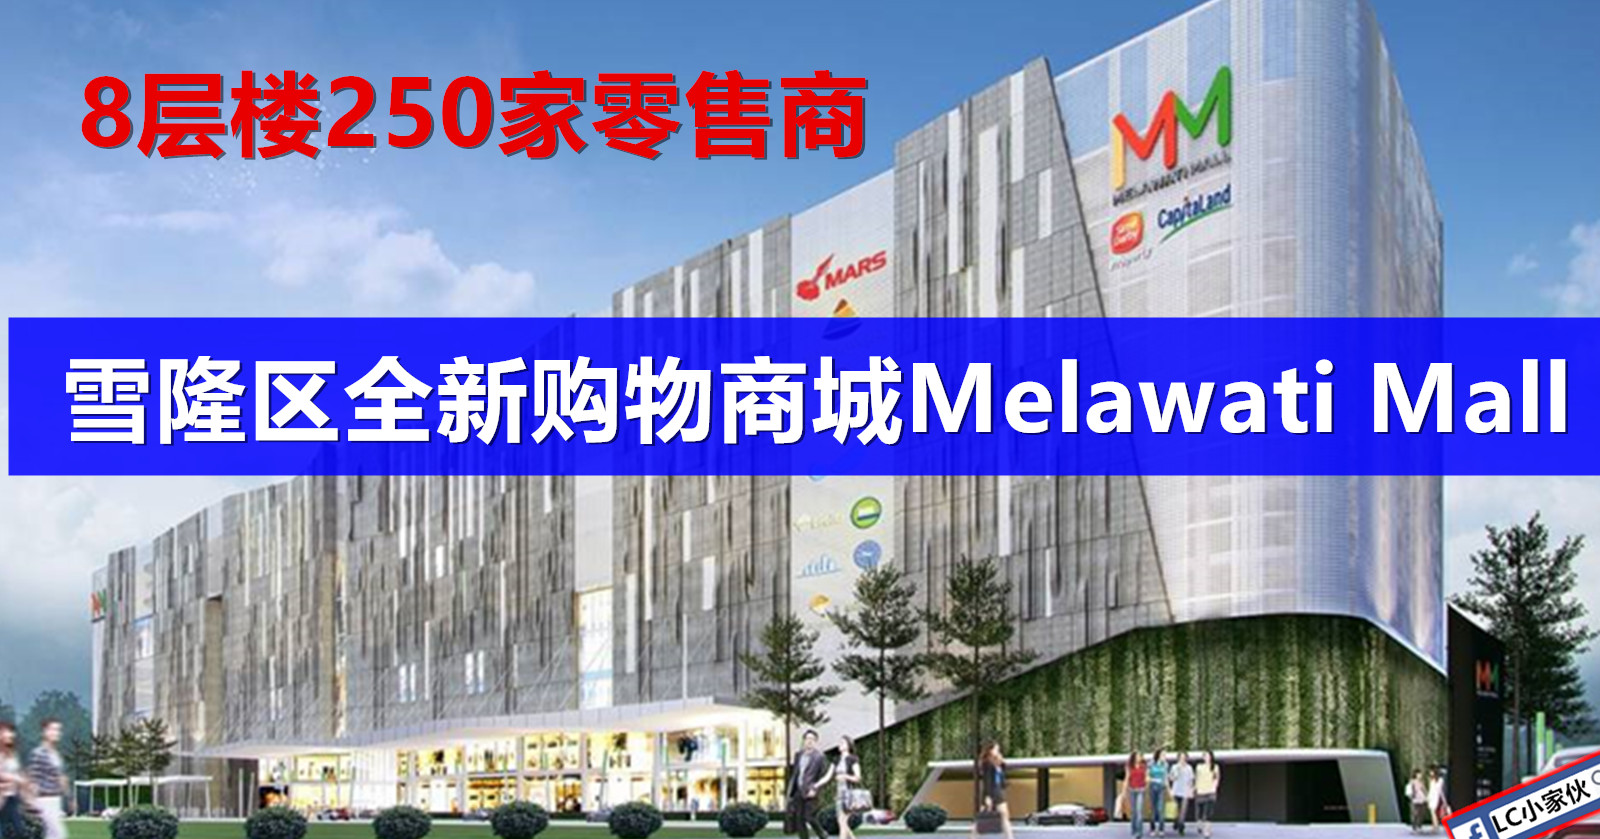 吉隆坡全新购物商城Melawati Mall 于7月26日开张 | LC 小傢伙綜合網